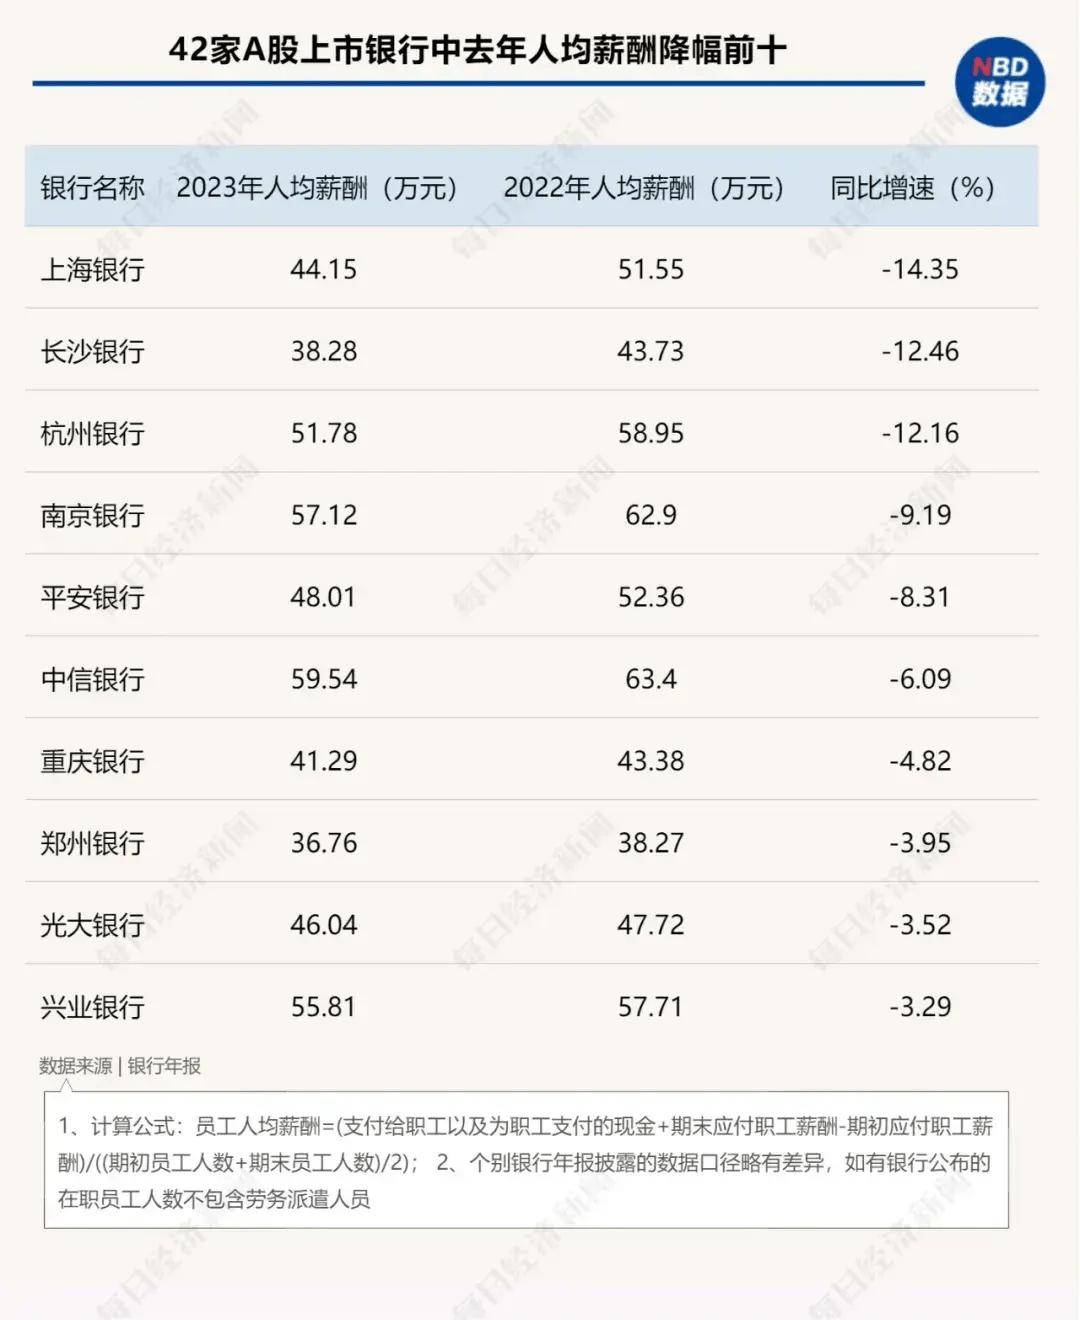 其中上海银行,杭州银行,长沙银行,平均薪酬同比下降都达到10%以上